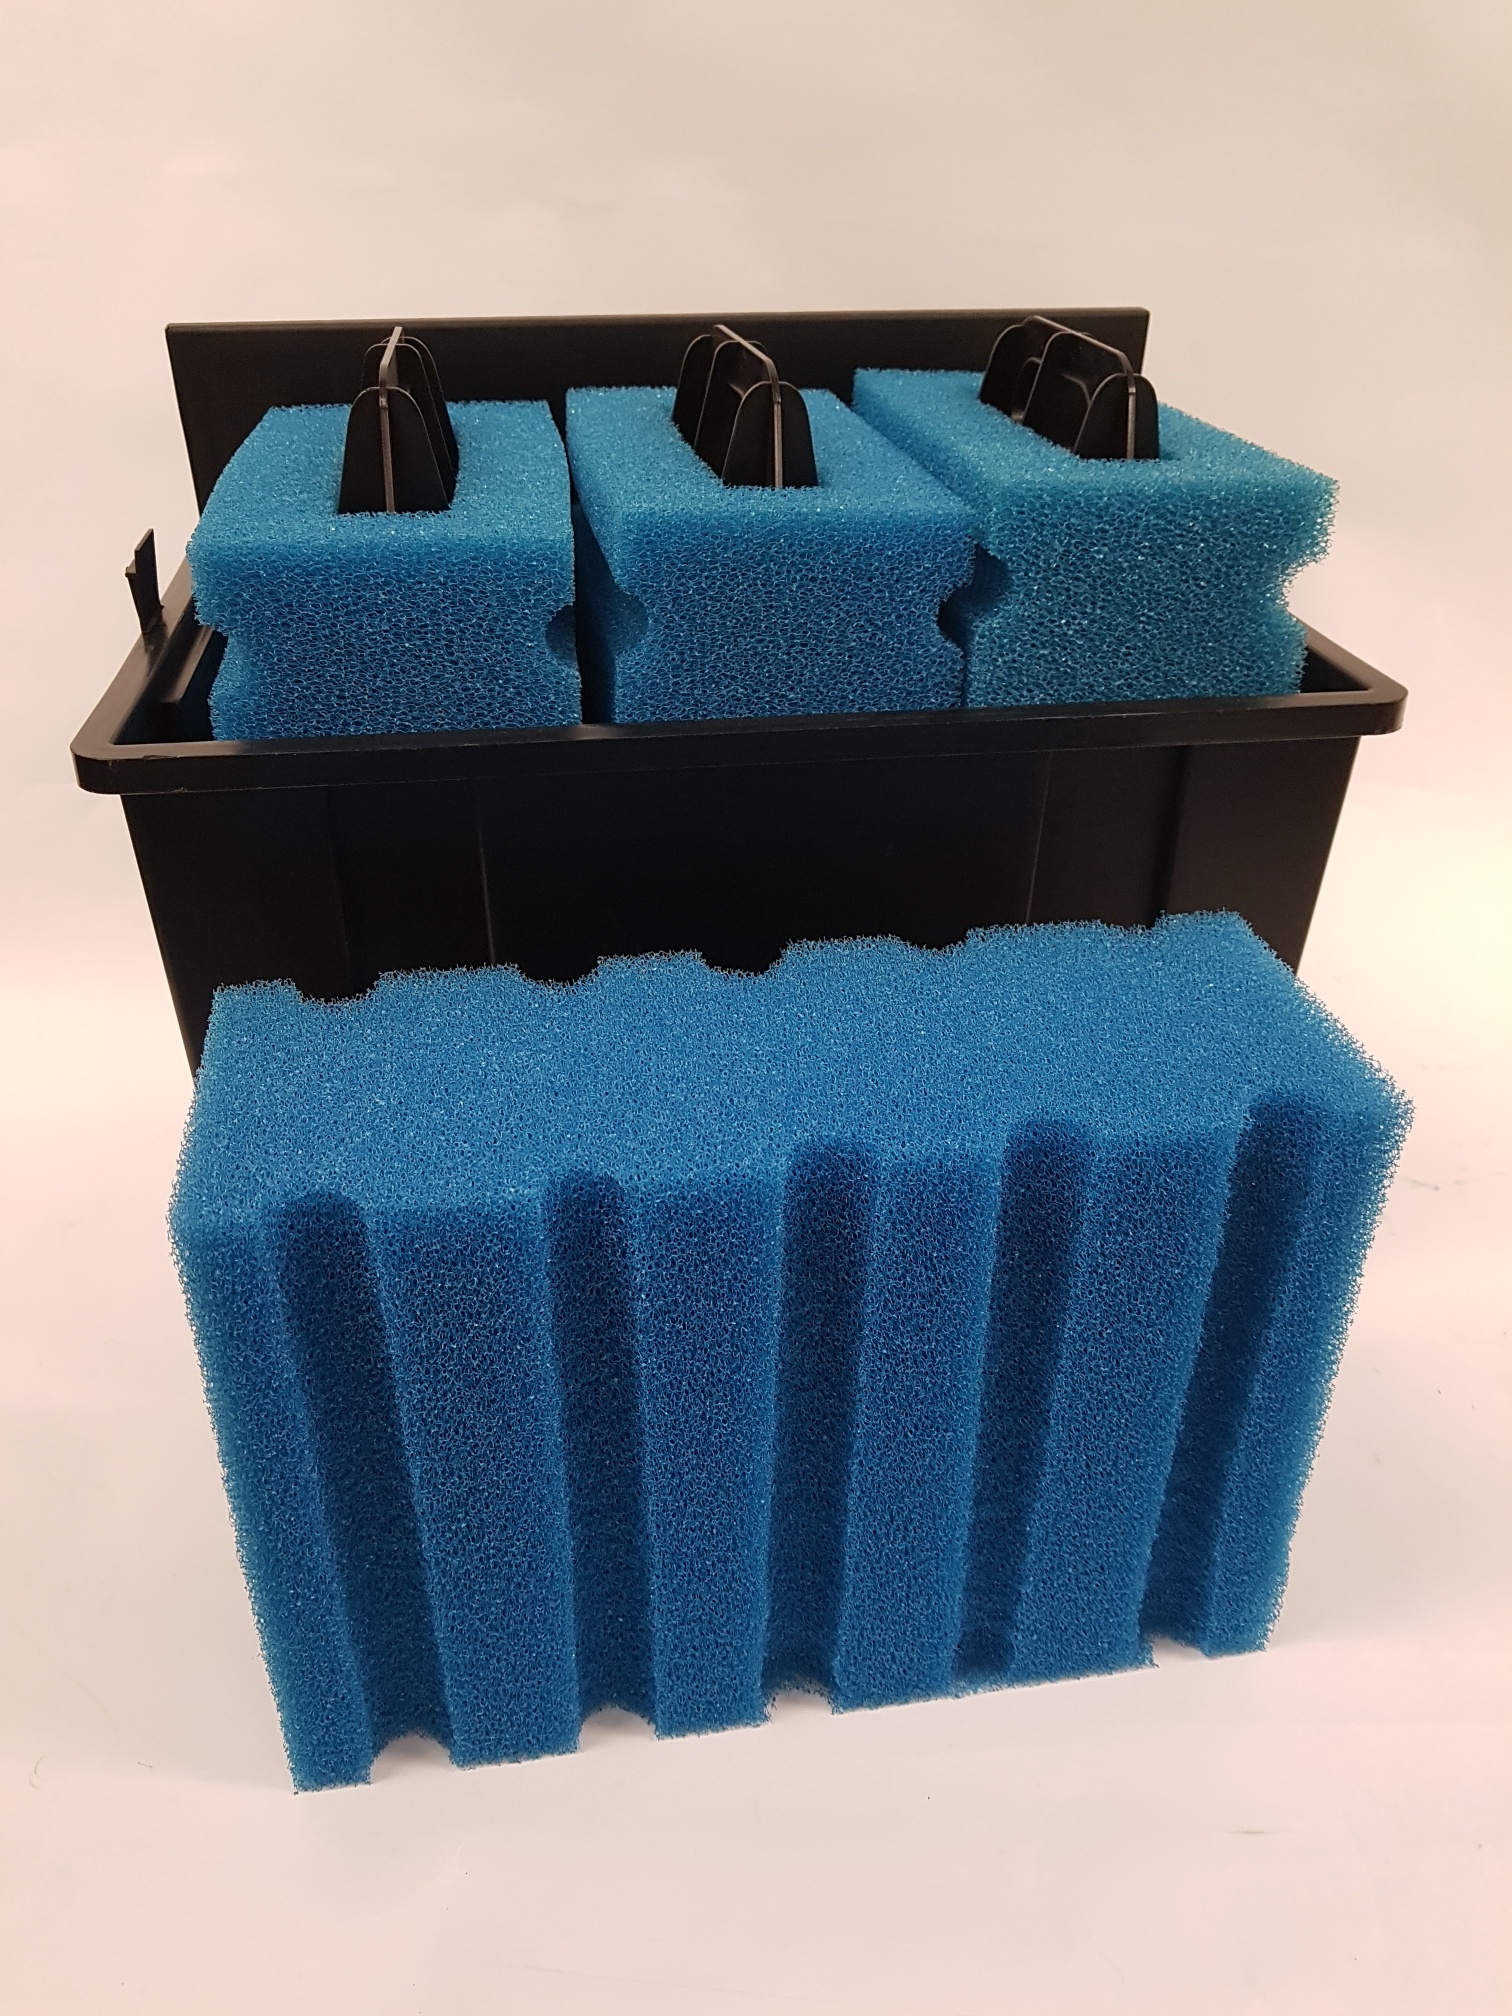 Filtermatten blau zu Aquaking UBF 25000 mit Griff 3-teilig inkl. Behälter